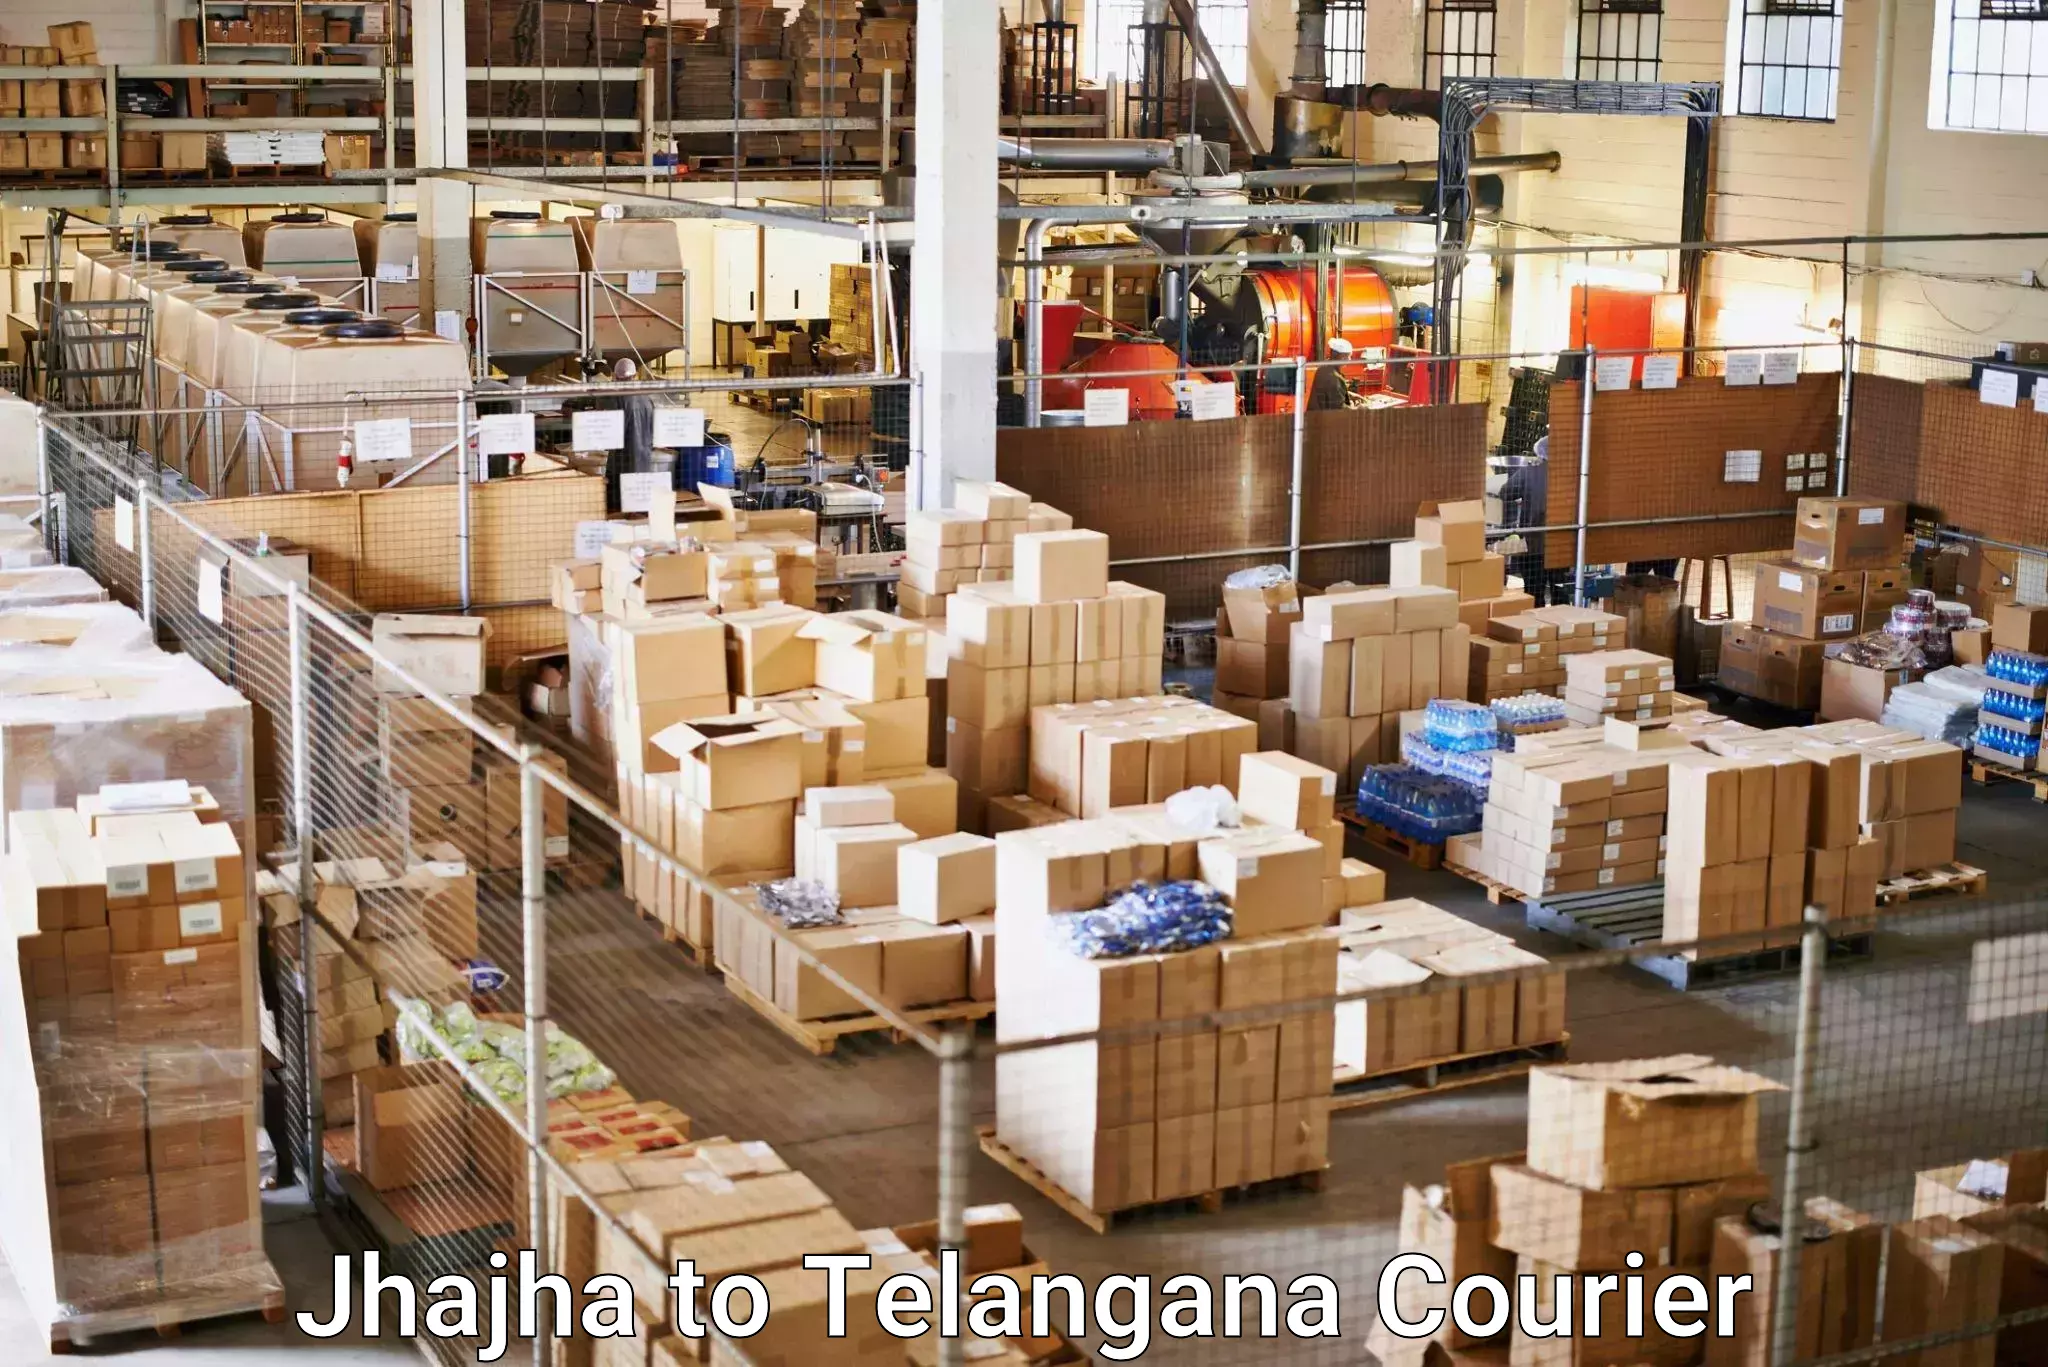 High-capacity parcel service Jhajha to Sikanderguda